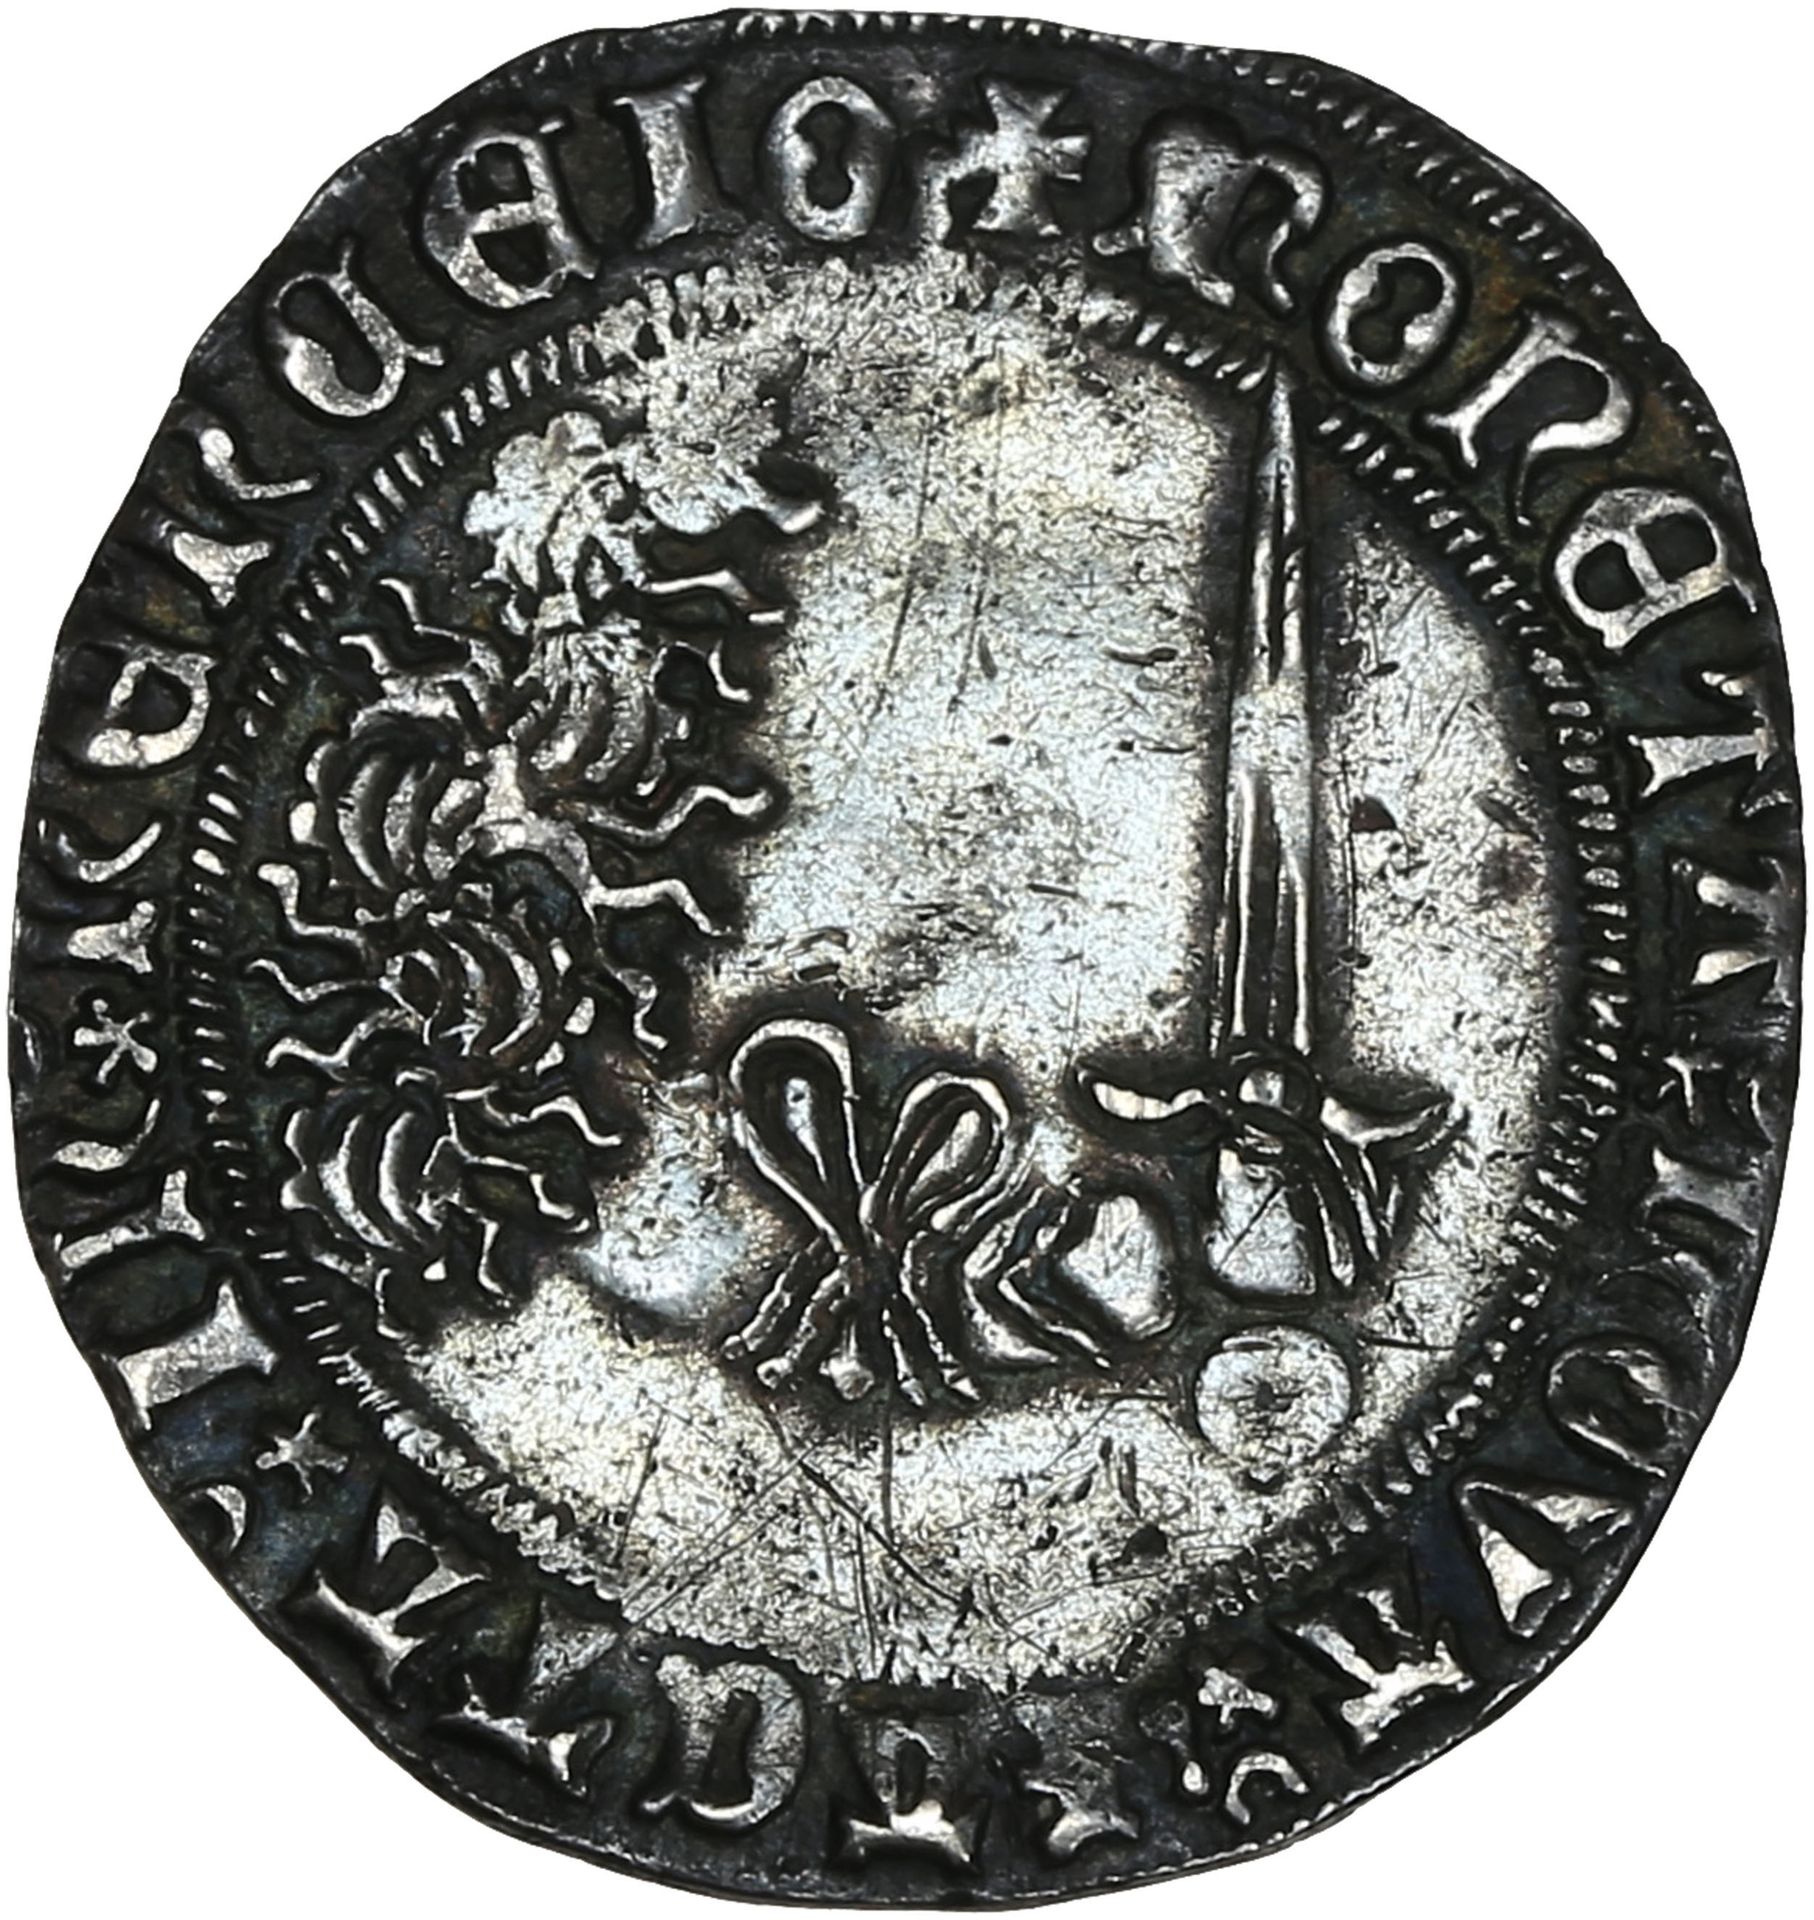 Null DUCHÉ de LORRAINE:
Charles II (1390-1431): Gros de Nancy.
René de Vaudemont&hellip;